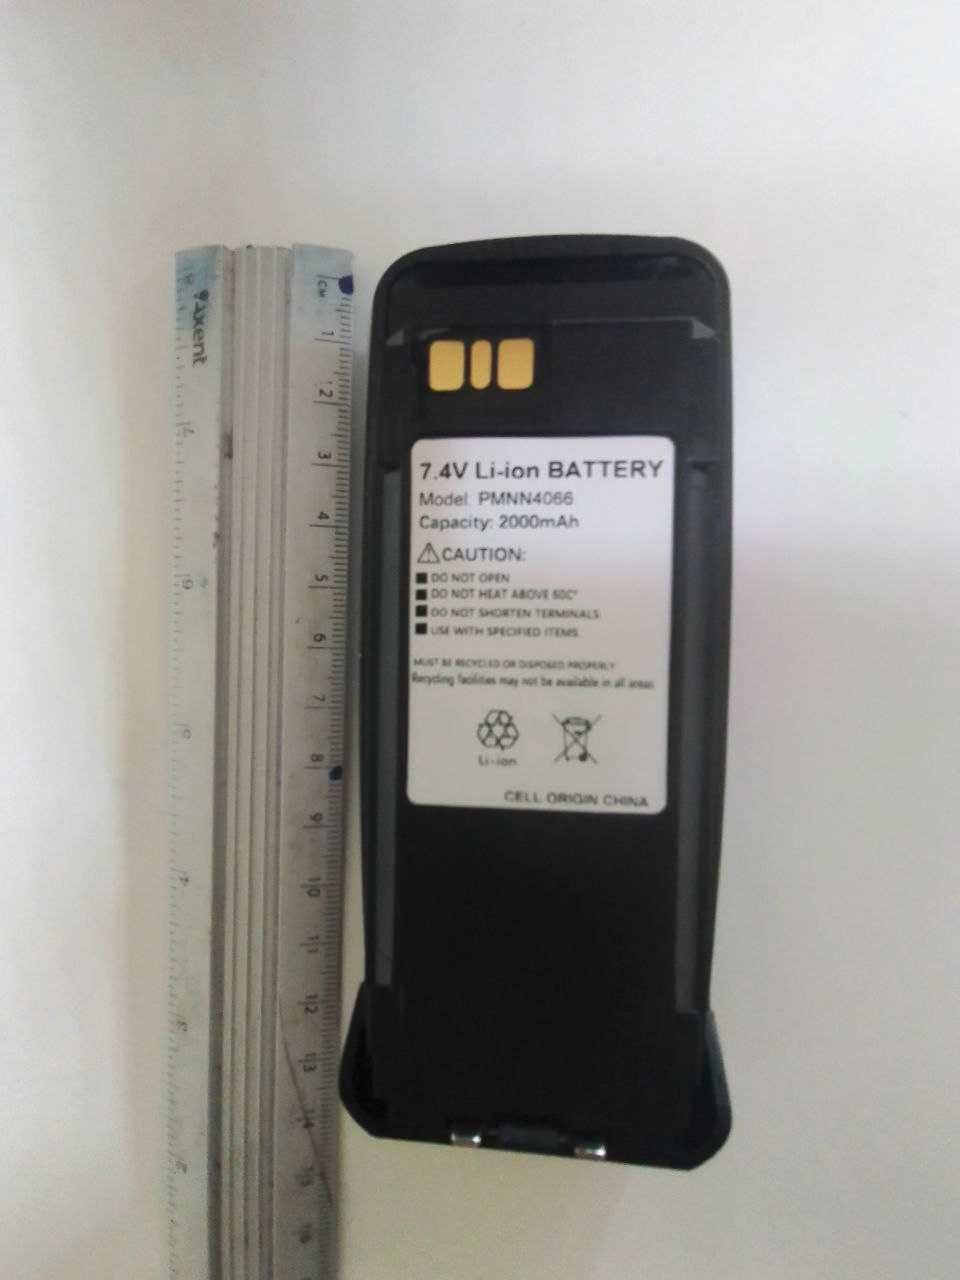 НОВА Батарея посилена PMNN4066 для рацій Motorola